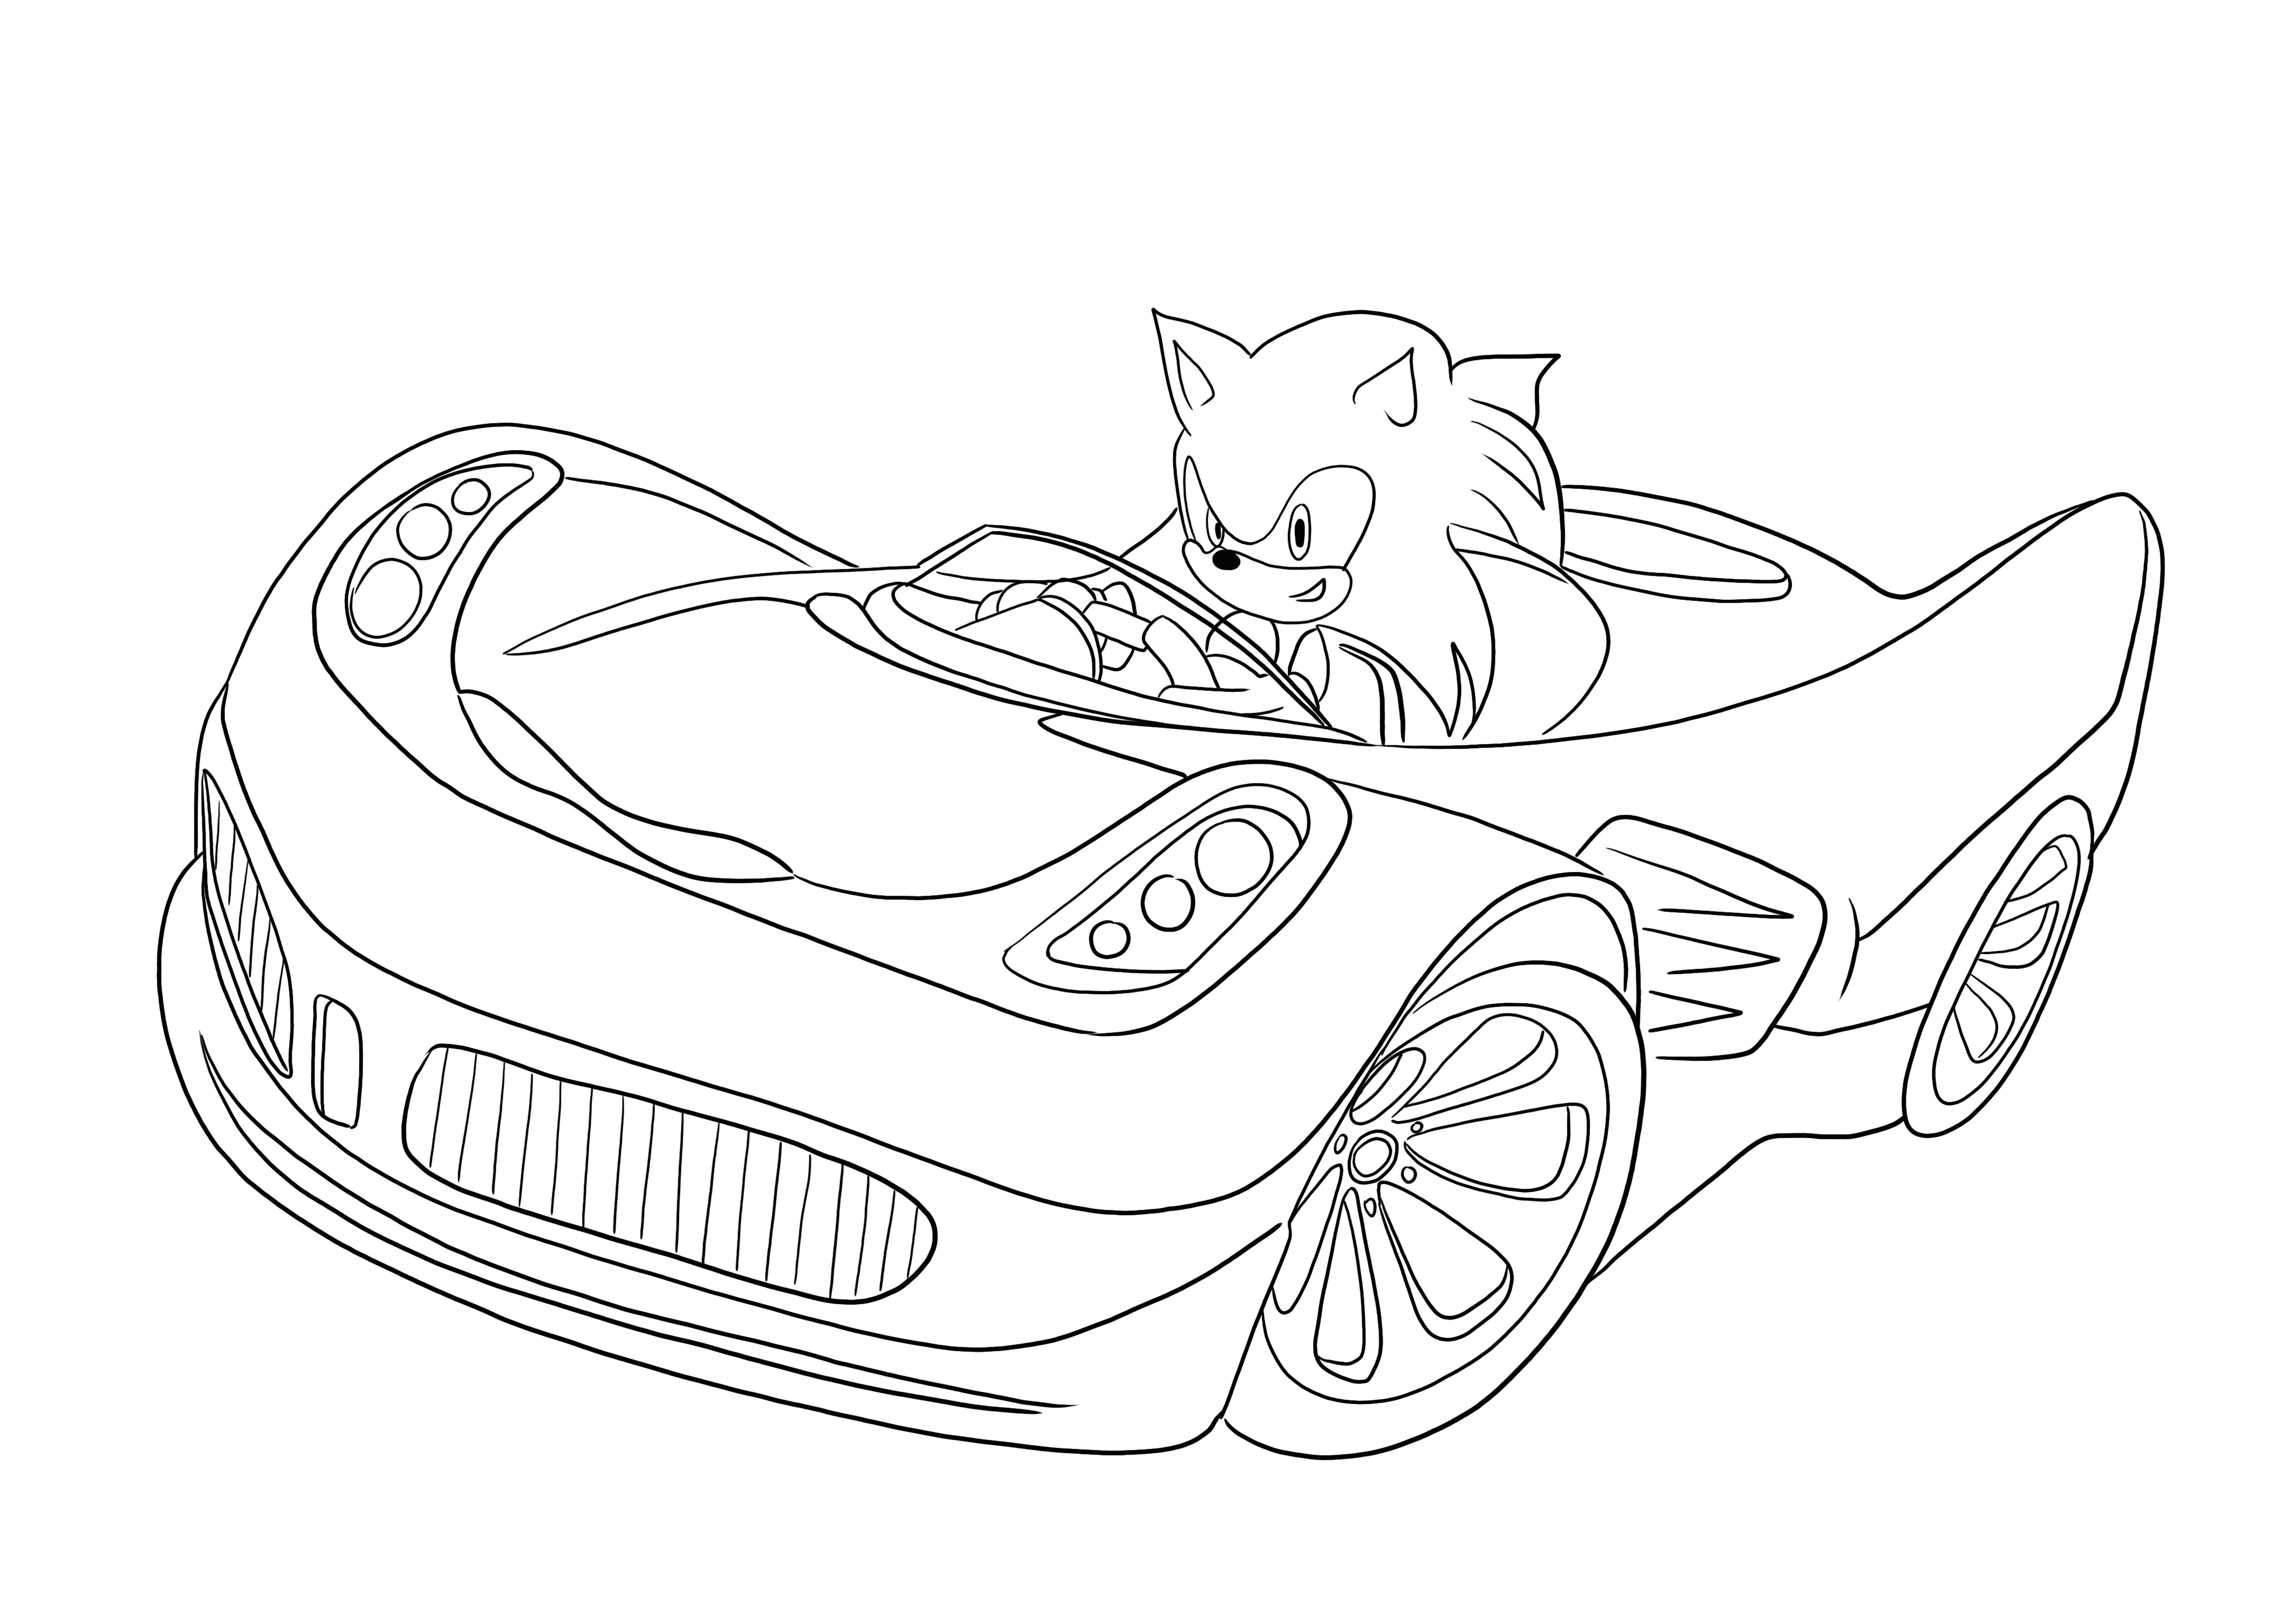 Sonic ratsastaa autolla ilmainen värityssivu tulostettavaksi ja käytettäväksi lasten kanssa